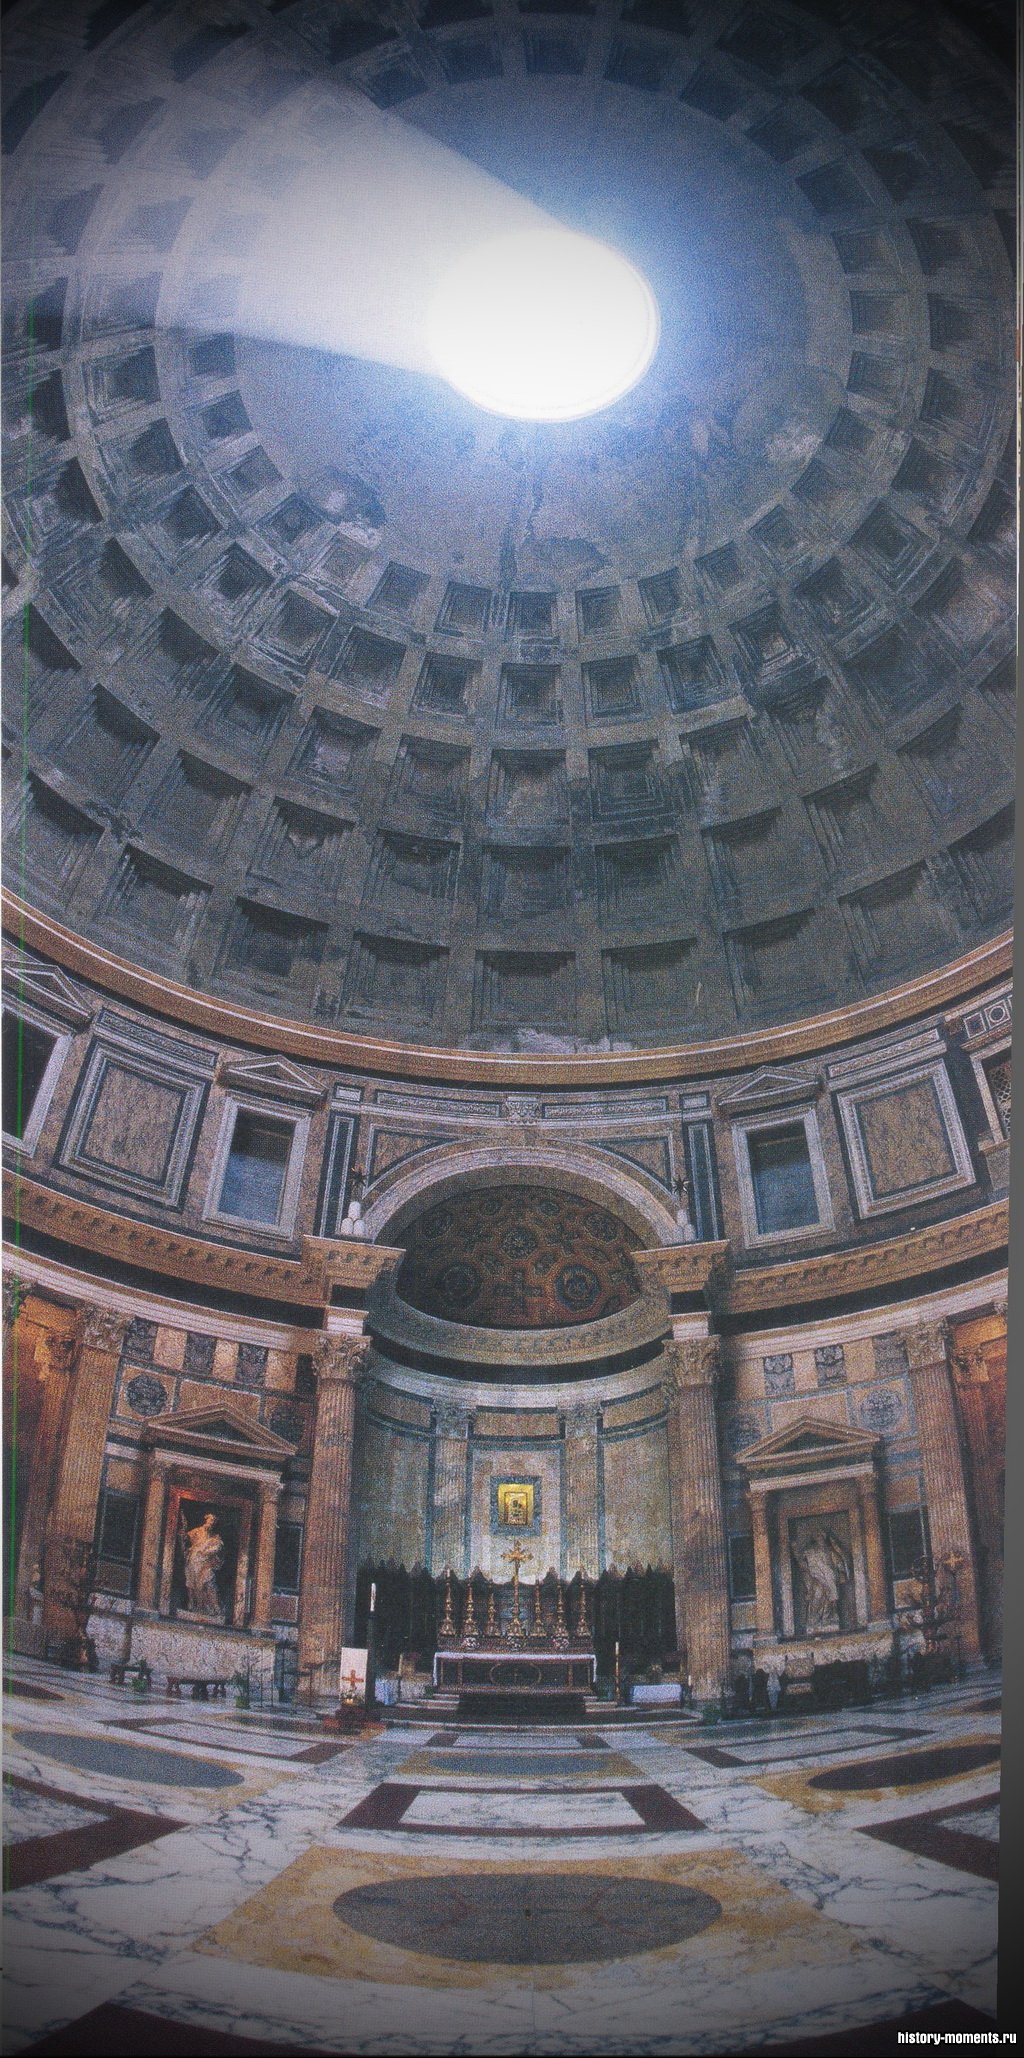 Пантеон в Риме - величественный храм, посвященный всем богам сразу. Его огромный купол диаметром 43 м был самым большим куполом Древнего мира.